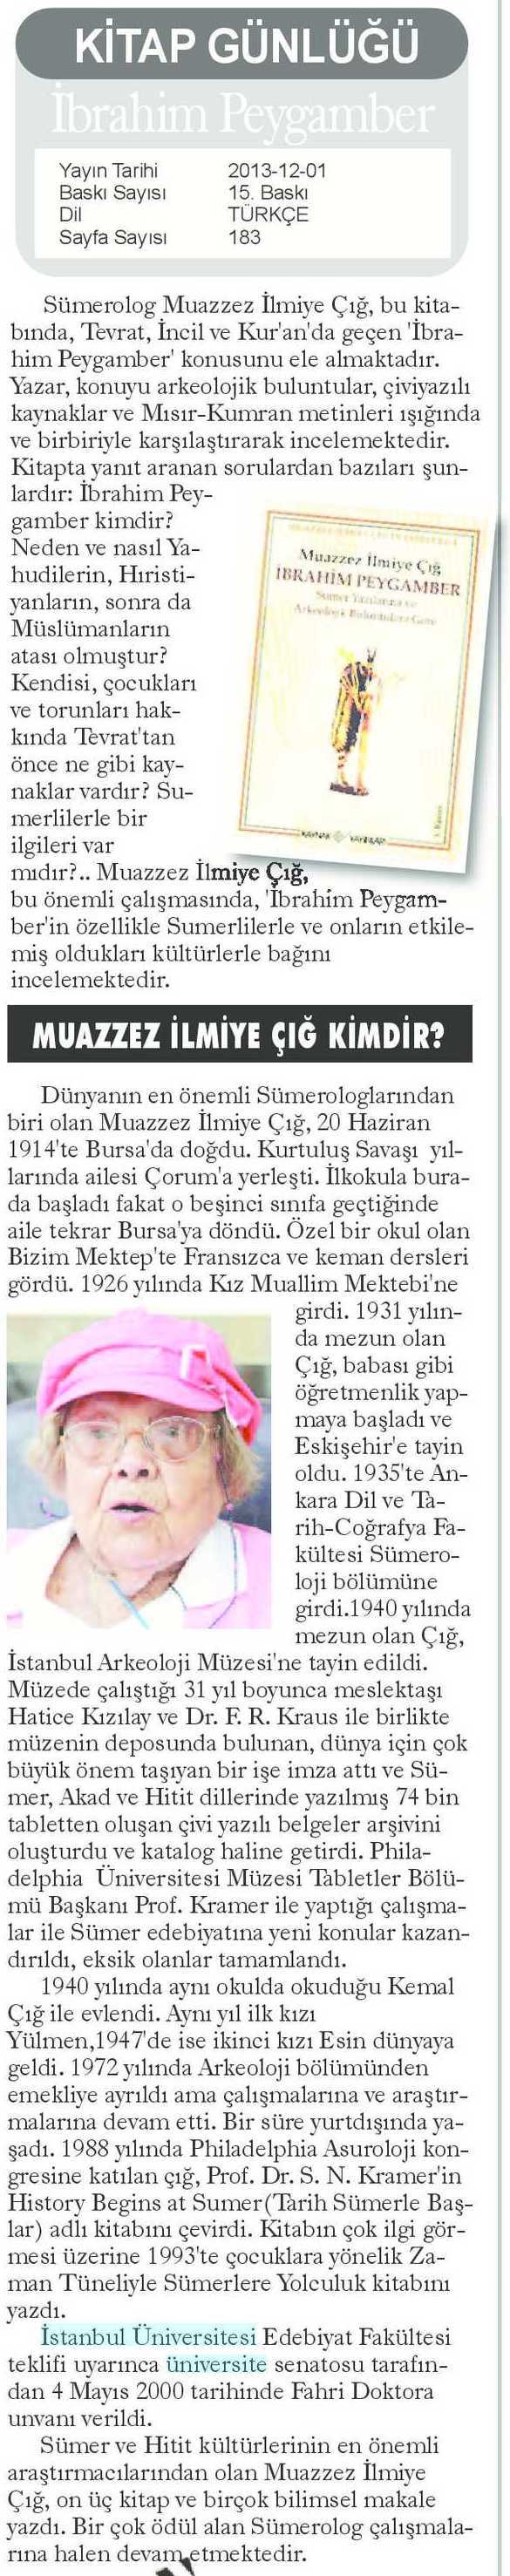 KITAP GUNLUGU Yayın Adı : Yeni Marmara Gazetesi